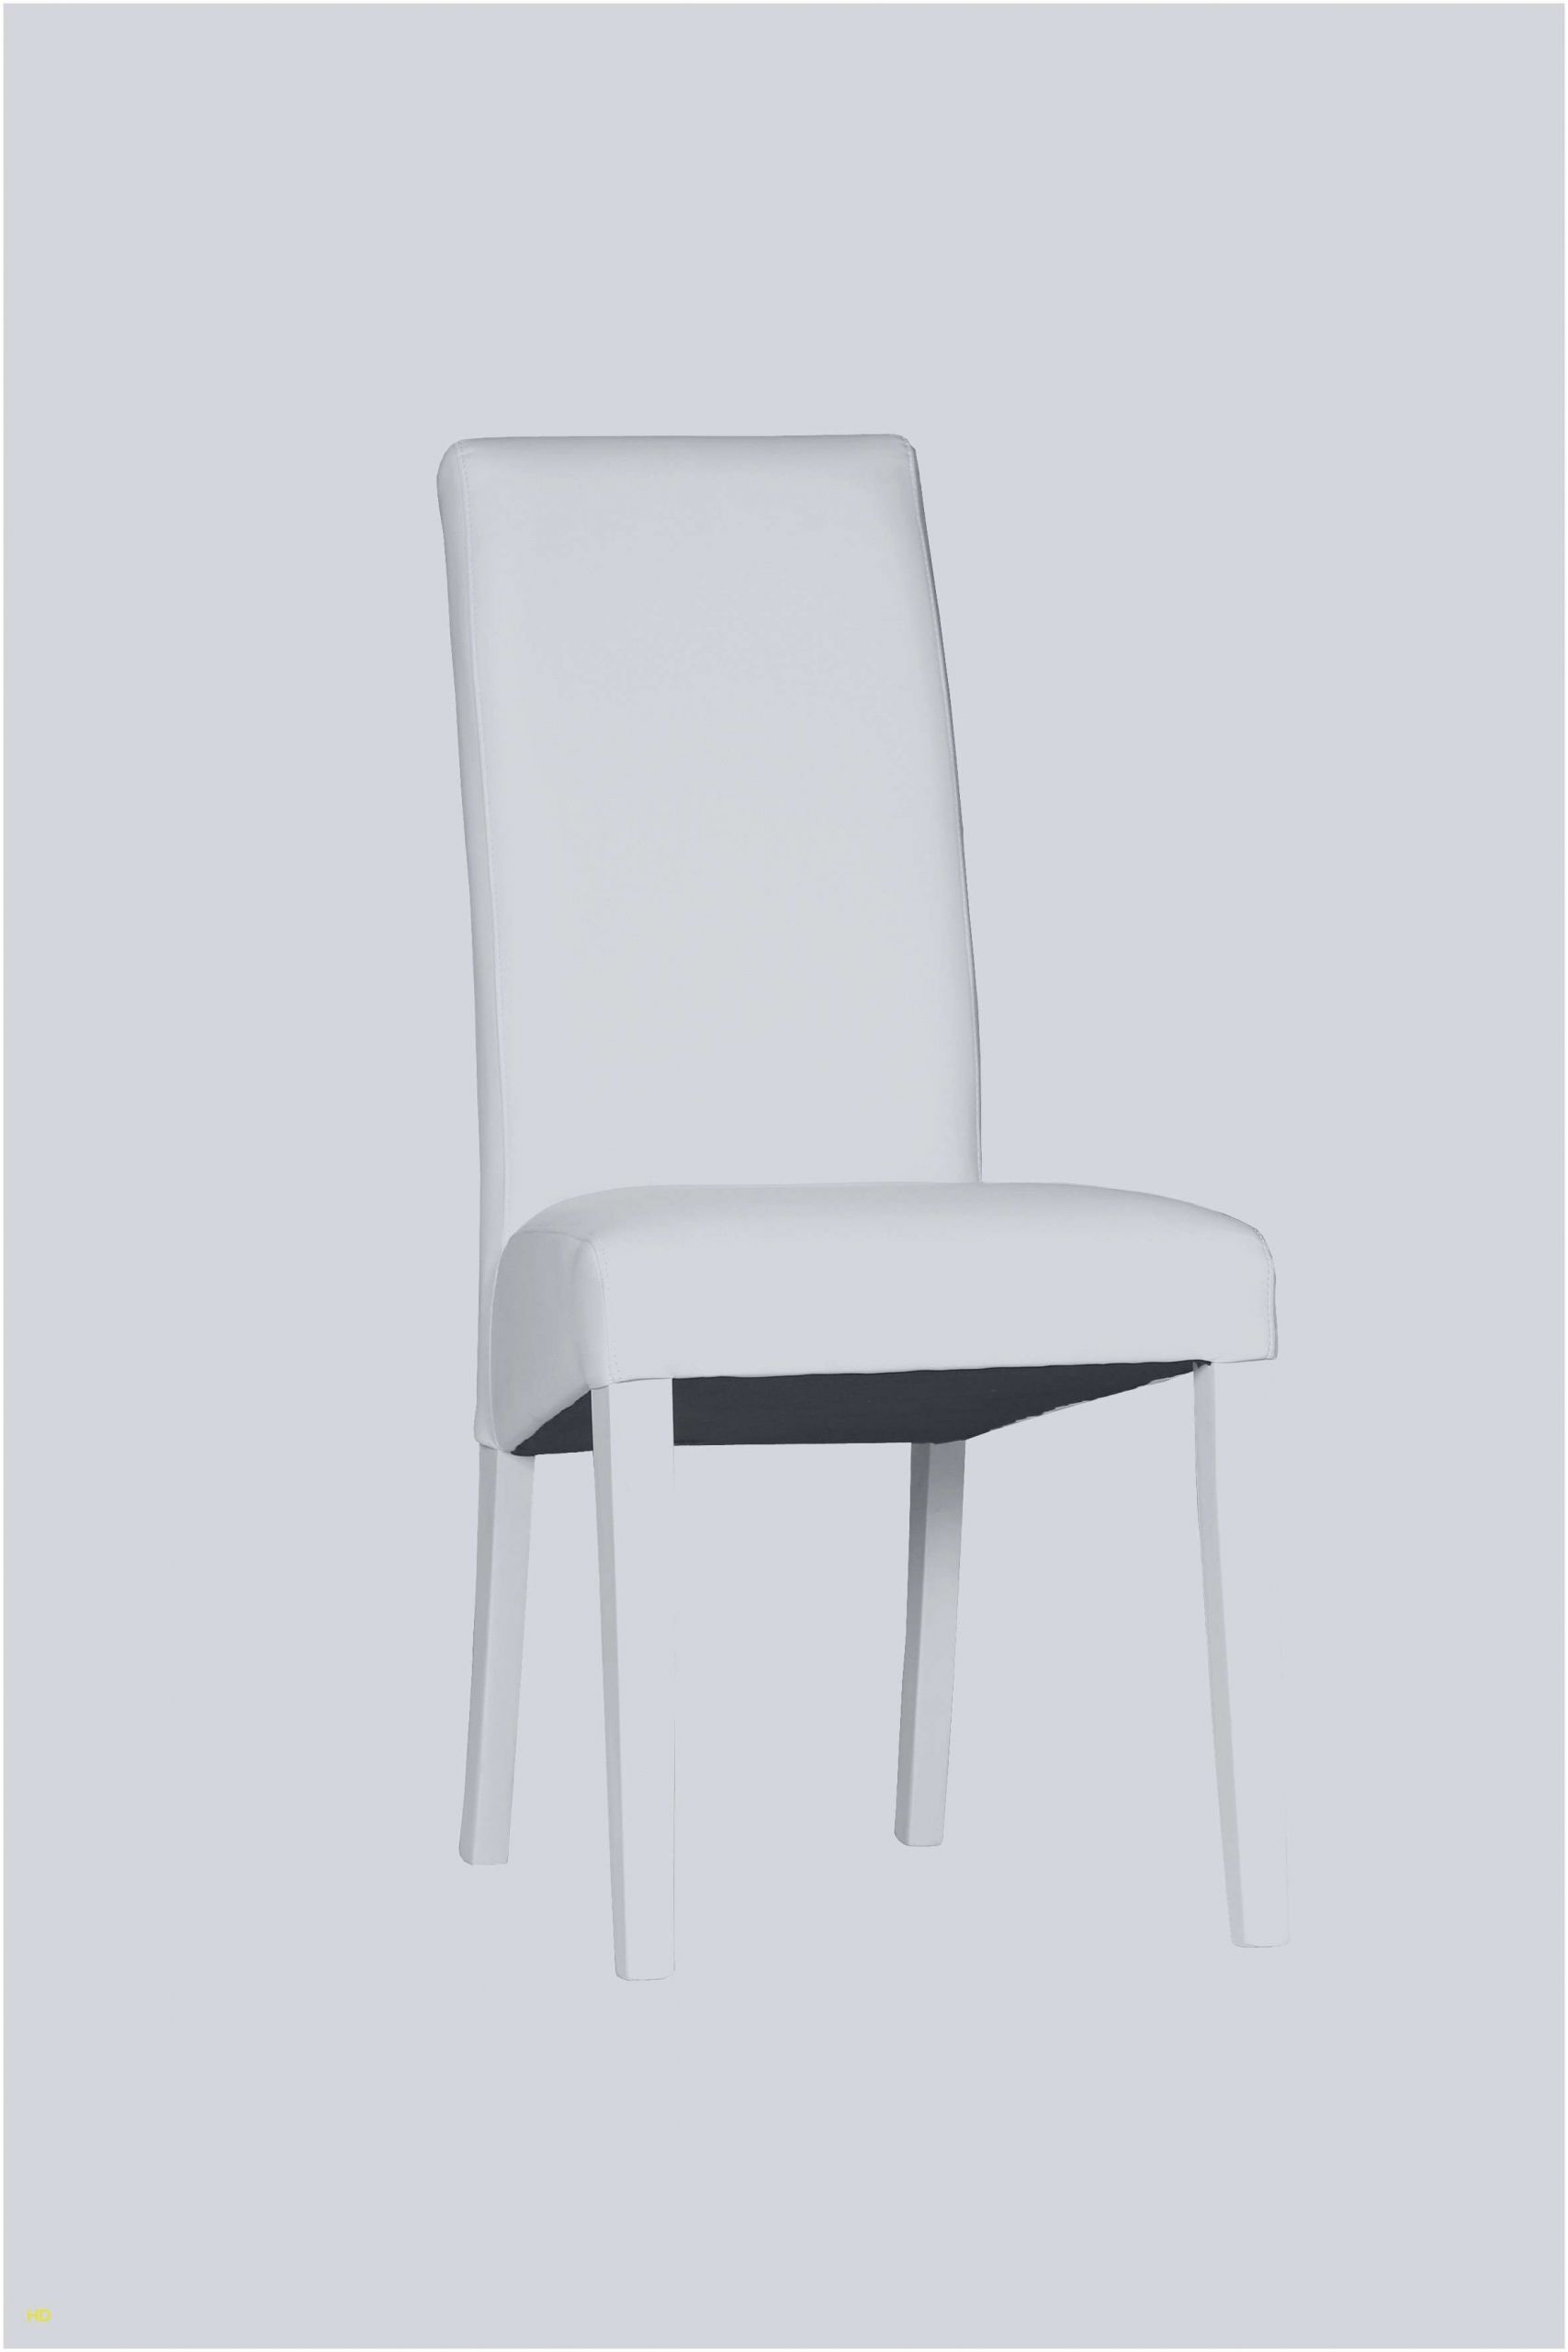 fauteuil ikea jaune ikea galette de chaise c2a2ec286a chaise noir pas cher elegant chaise blanche 0d le meilleur de ikea galette de chaise galette de chaise ikea